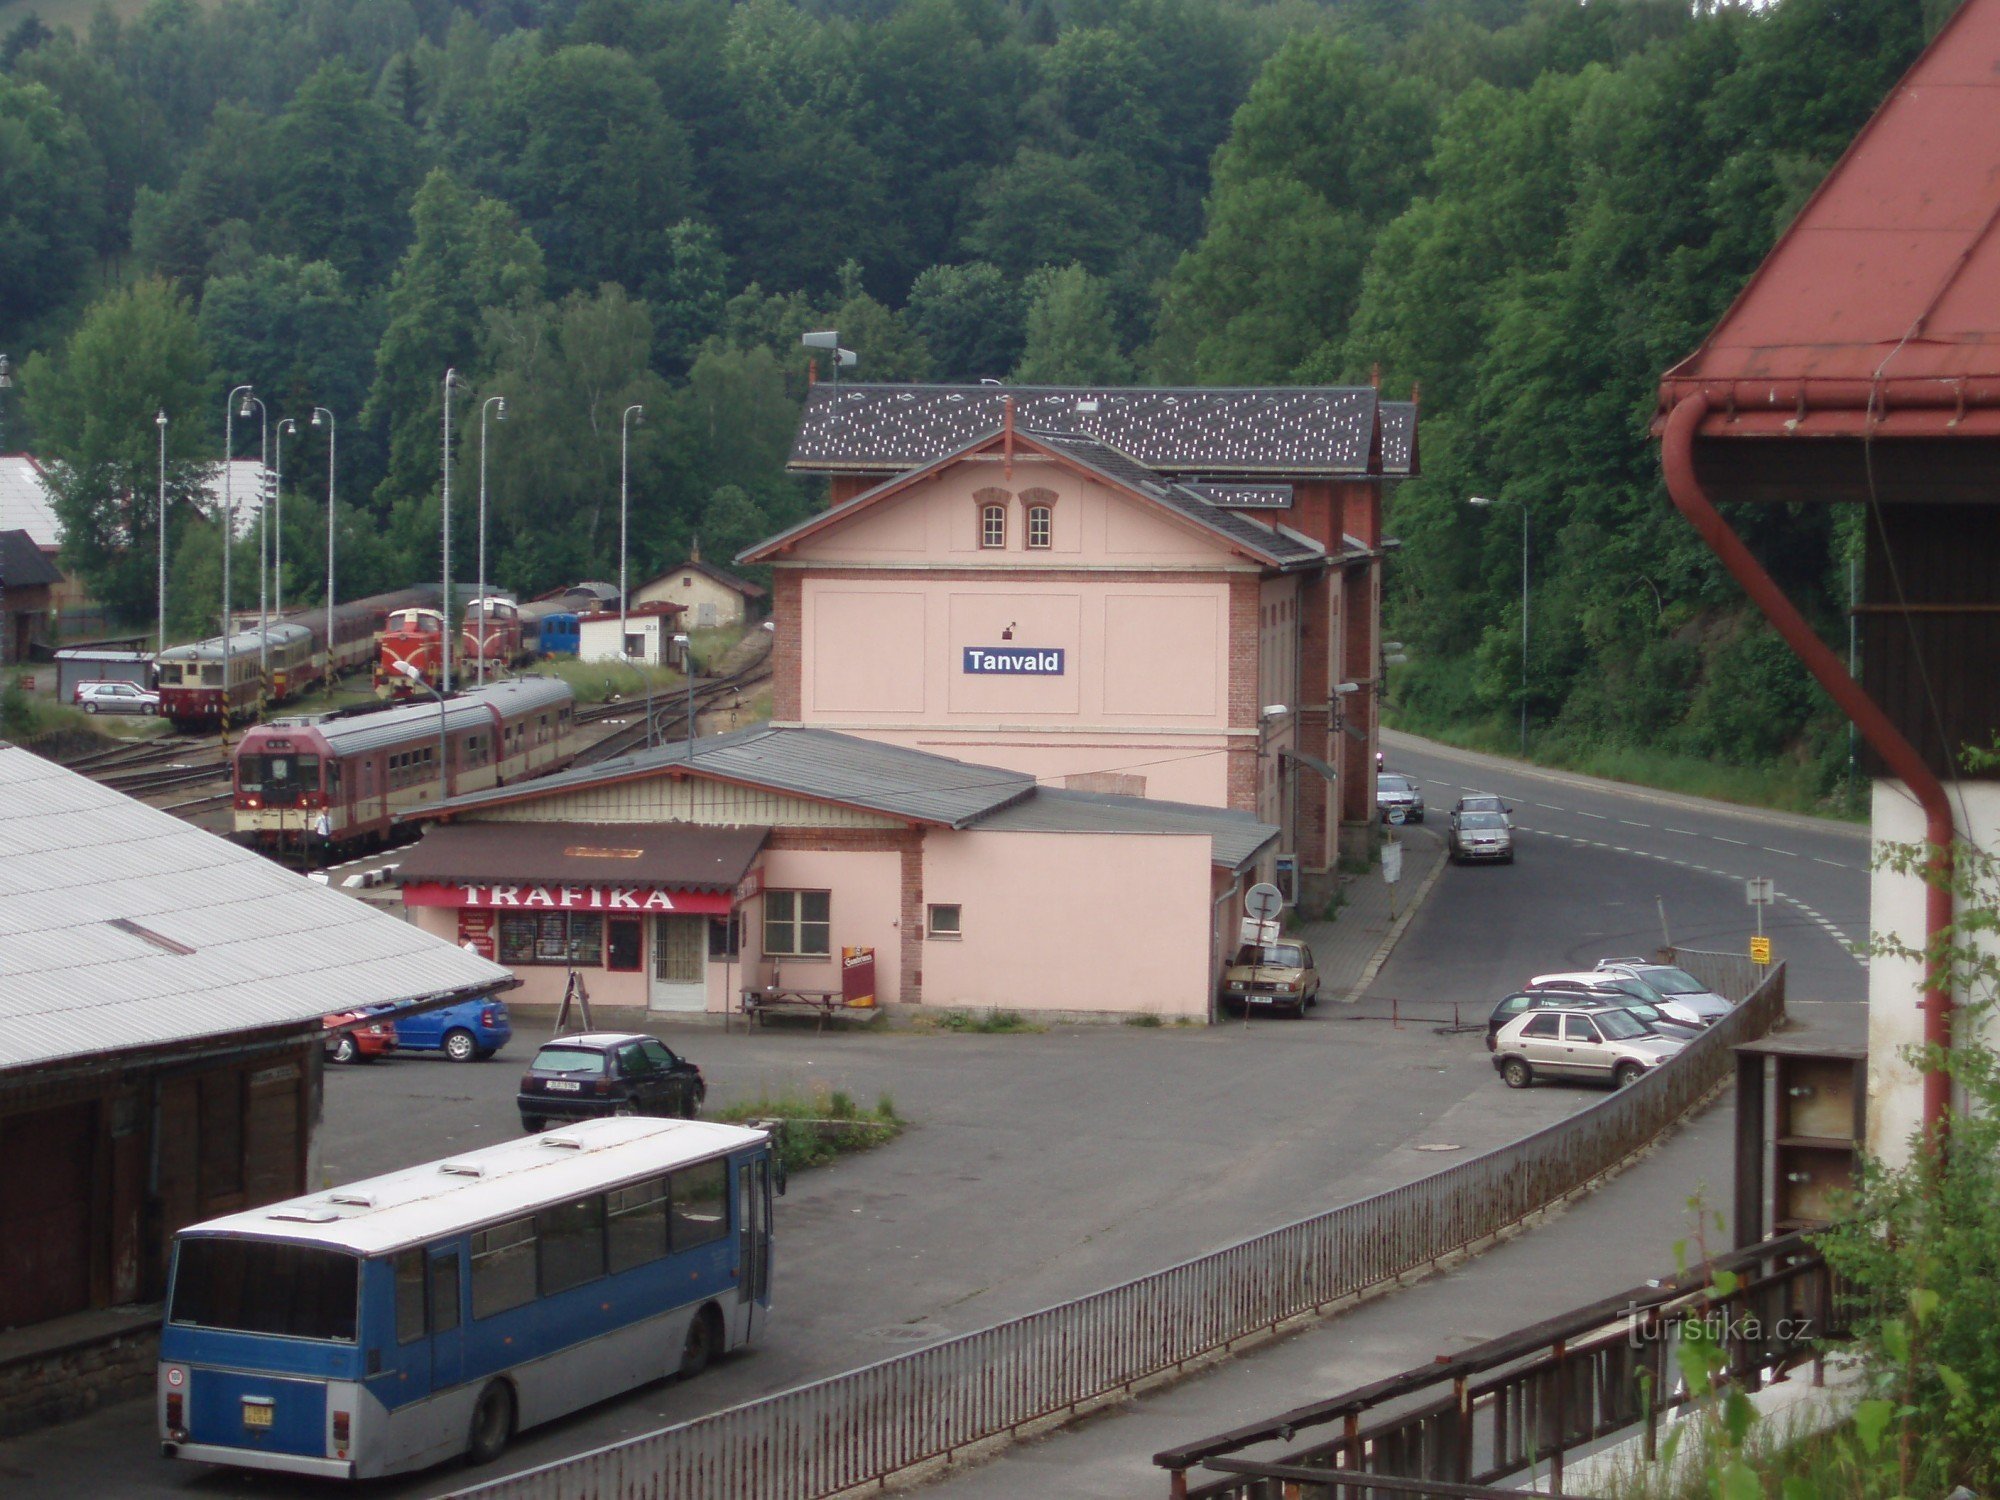 Station Tanvald